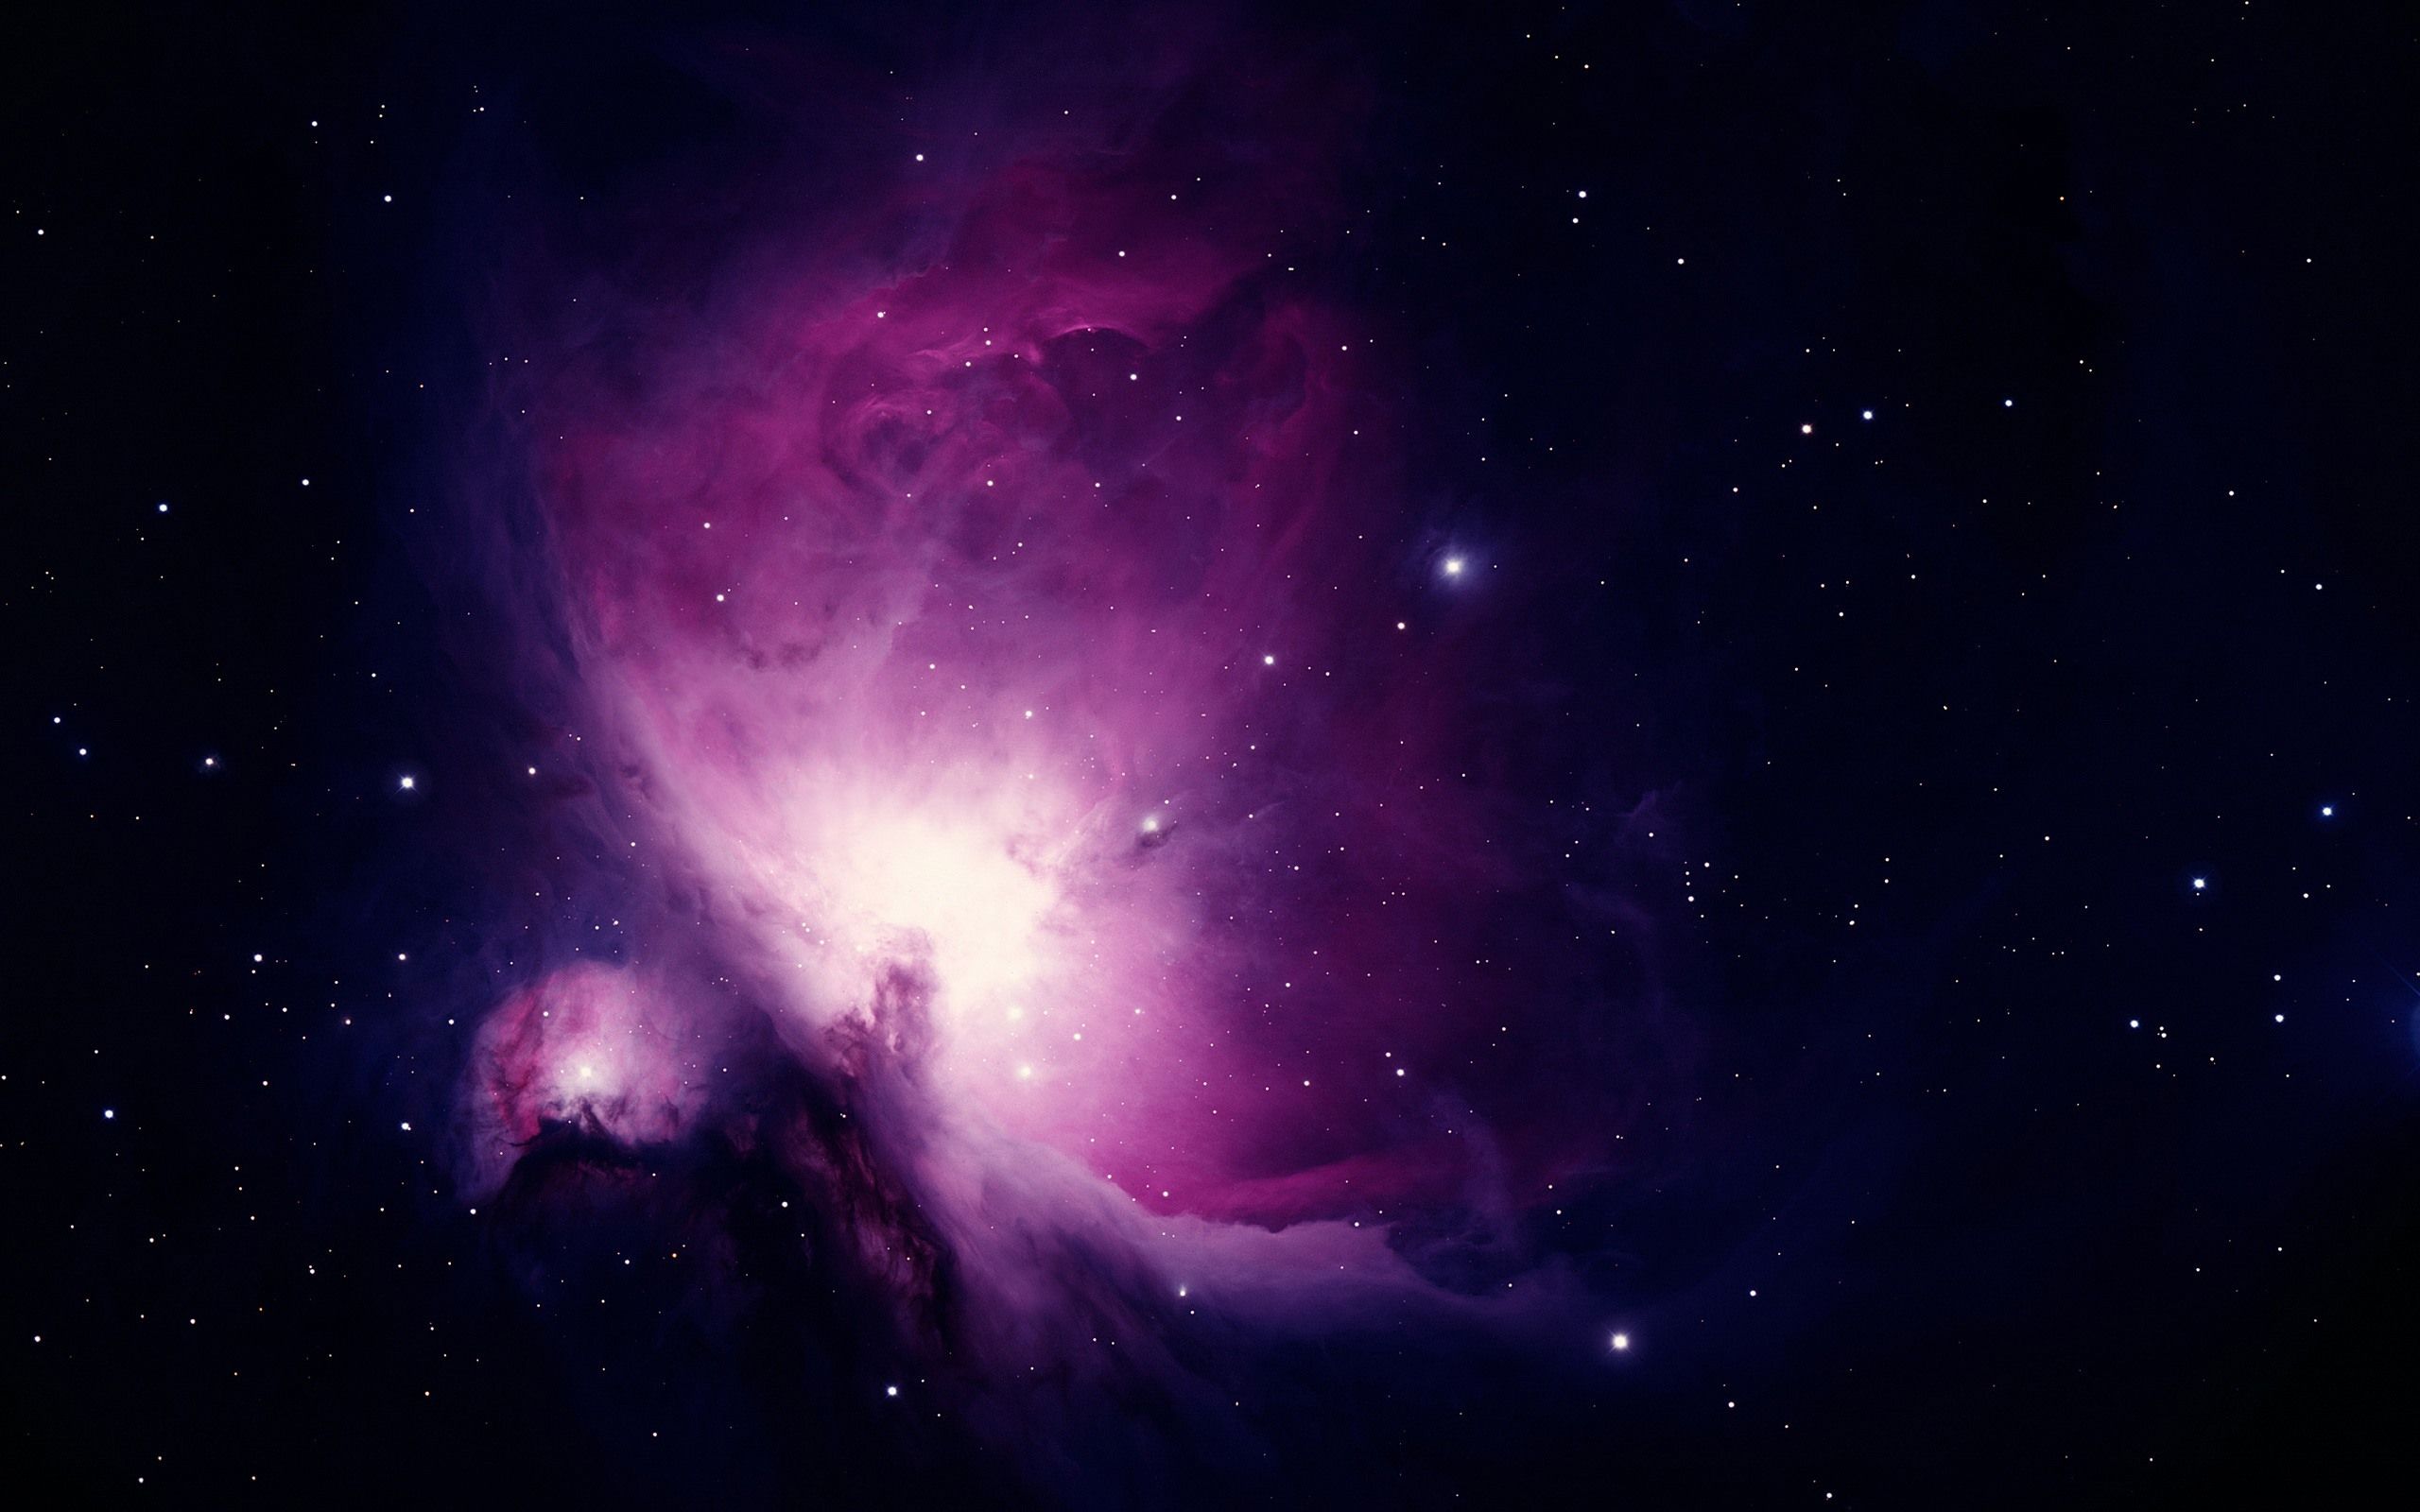  Schwarzes Loch Hintergrundbild 2560x1600. Lila Nebel, Sterne, schönes Universum 2560x1600 HD Hintergrundbilder, HD, Bild